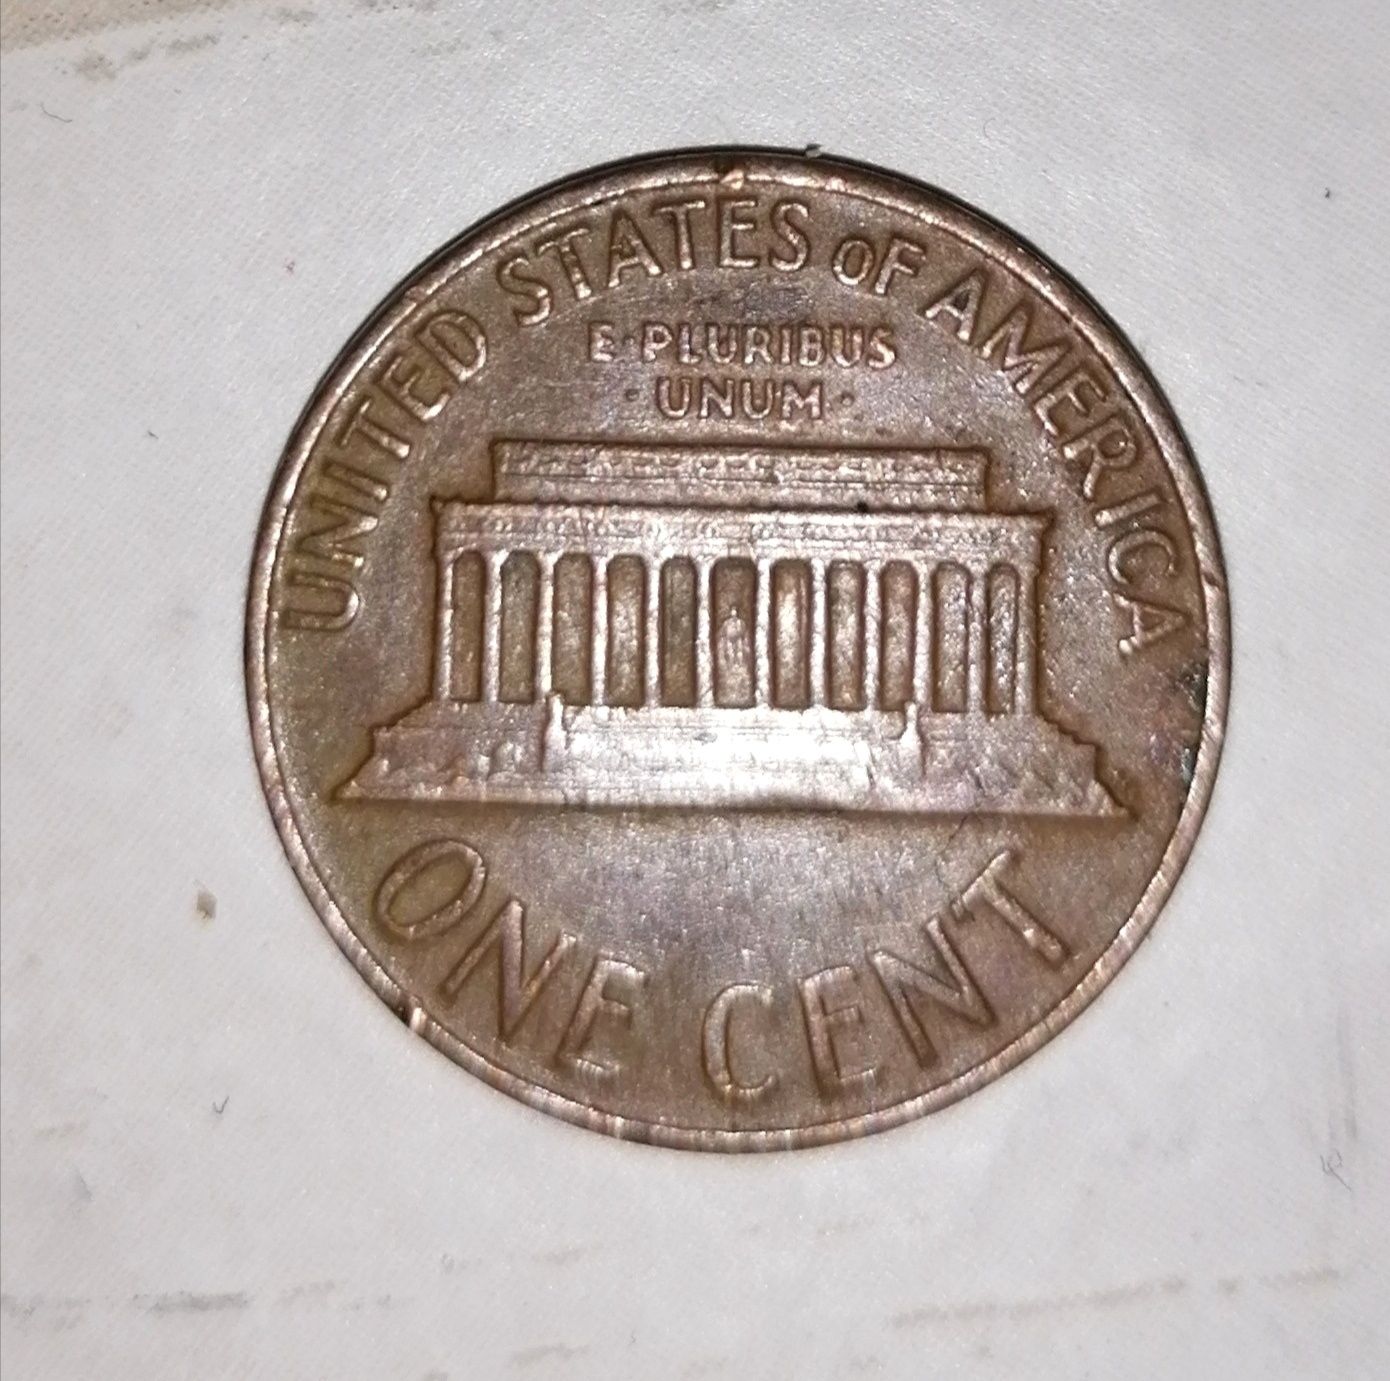 Monedă SUA ONE CENT 1968 extrem de rară cu multe erori de fabrică!!!